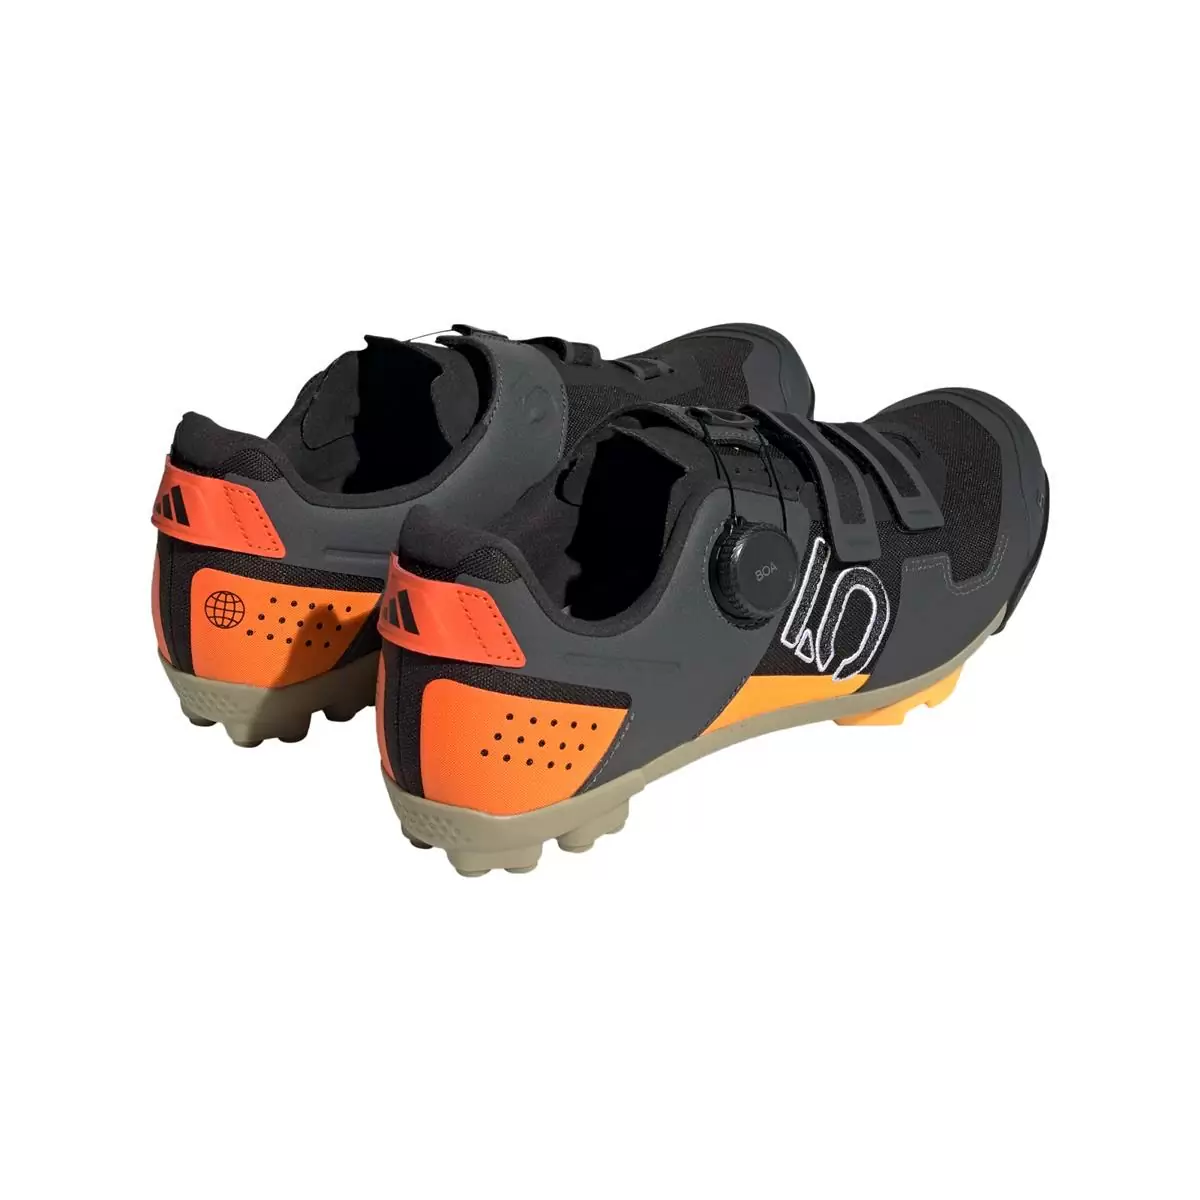 Clip 5.10 Kestrel Boa MTB Shoes Black/Orange Size 41 #4